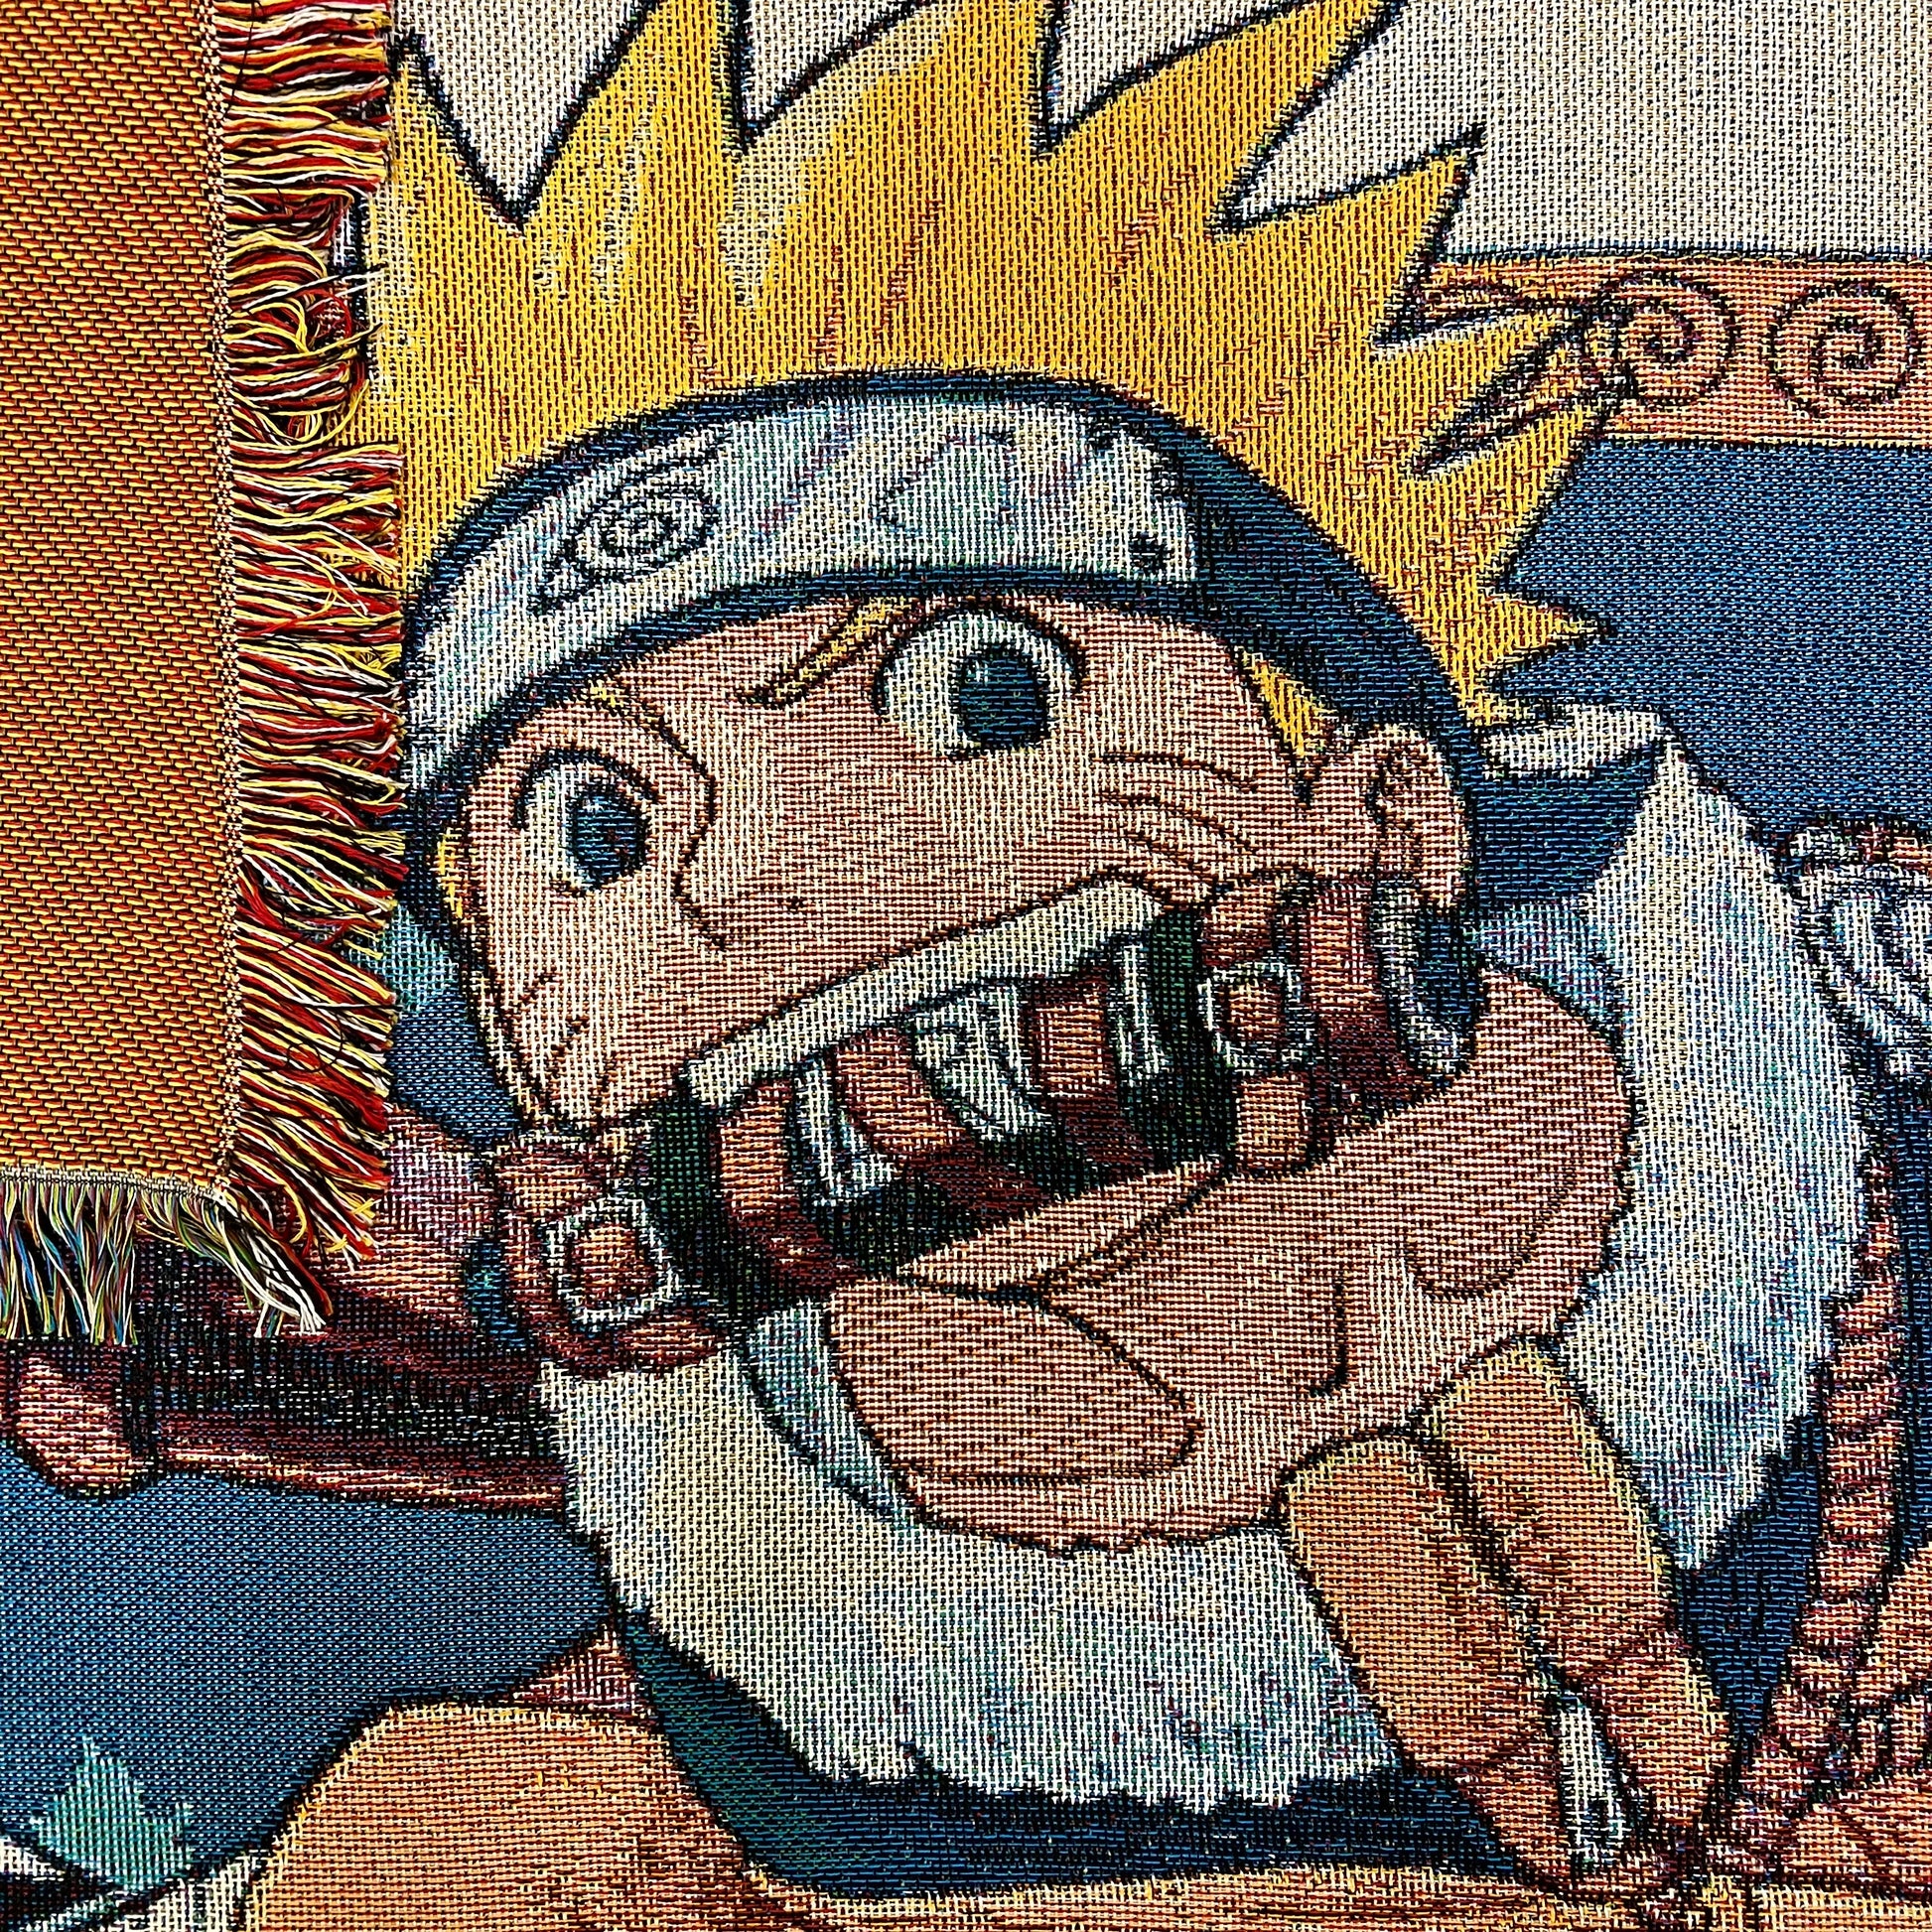 Naruto, Vol. 1: Uzumaki Naruto